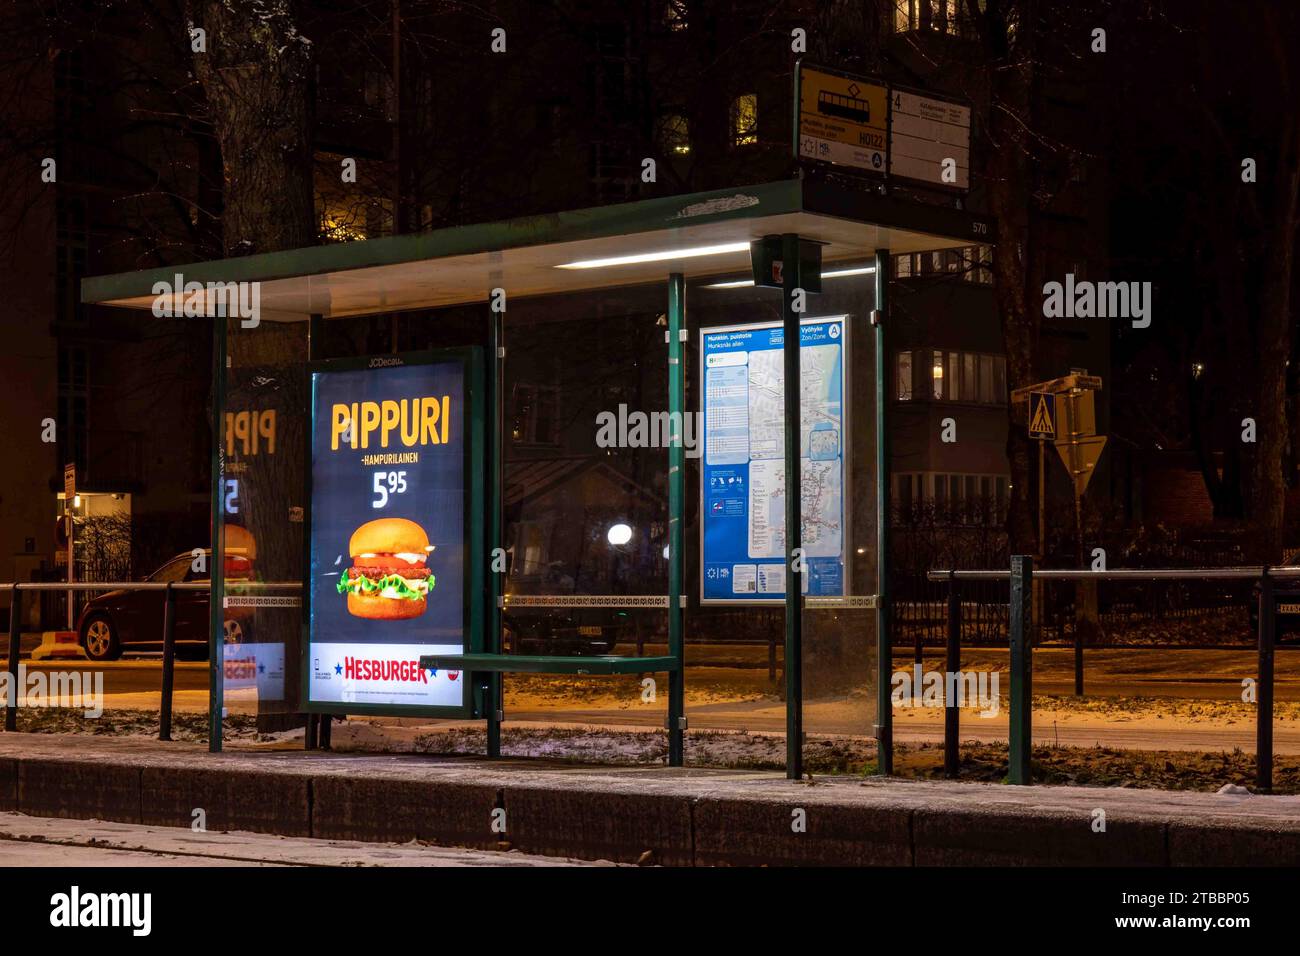 Die Straßenbahnhaltestelle Munkkiniemen aukio befindet sich nach Einbruch der Dunkelheit im Stadtteil Munkkiniemi in Helsinki, Finnland Stockfoto